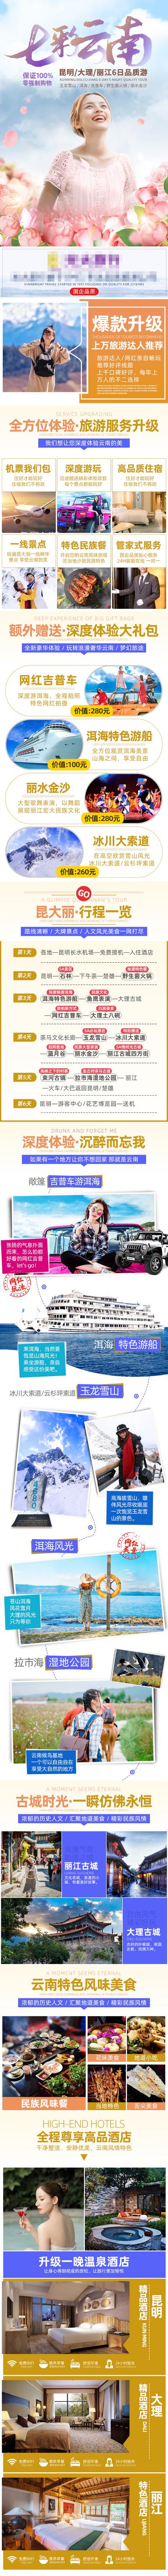 南门网 广告 海报 电商 云南 长图 旅游 详情页 